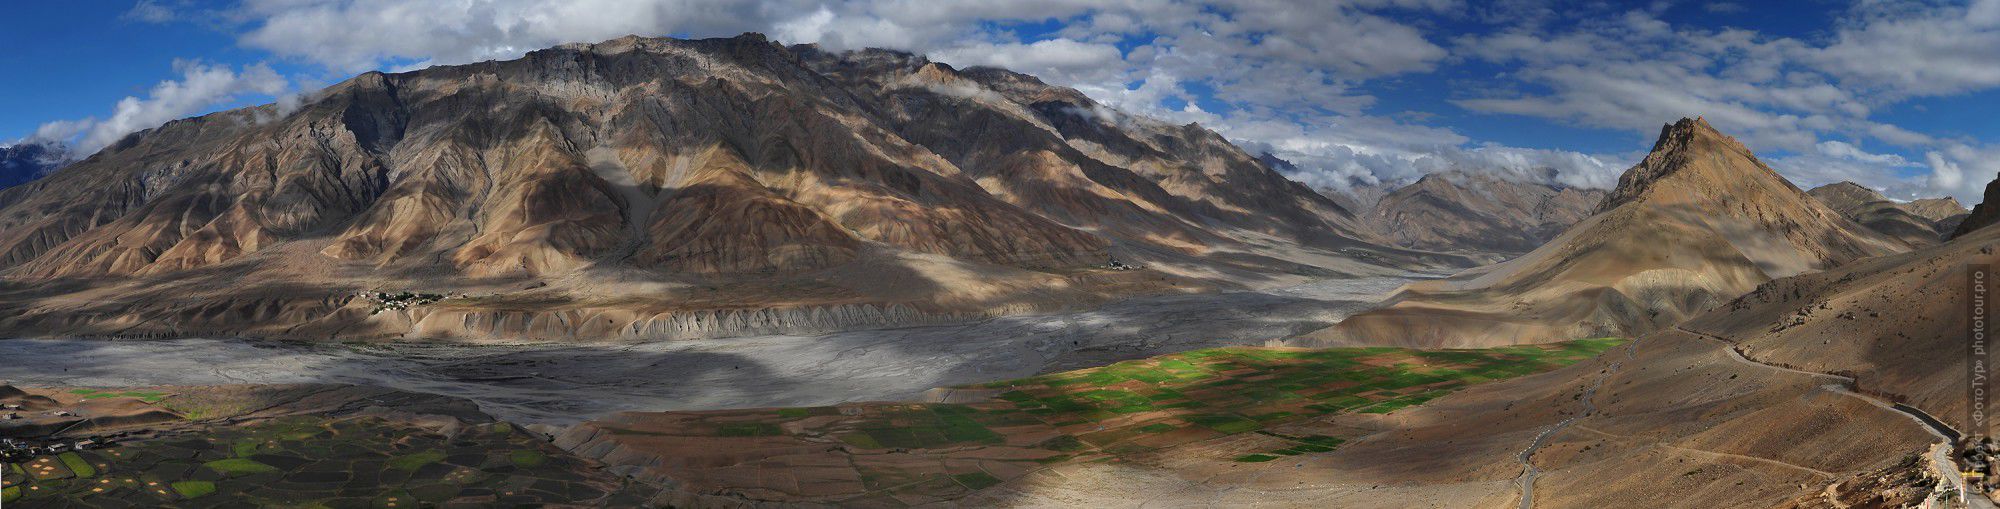 Панорама Долины Спити с крыши монастыря Ки. Фототур в Долину Спити из Леха,  Малый Тибет, Индия.